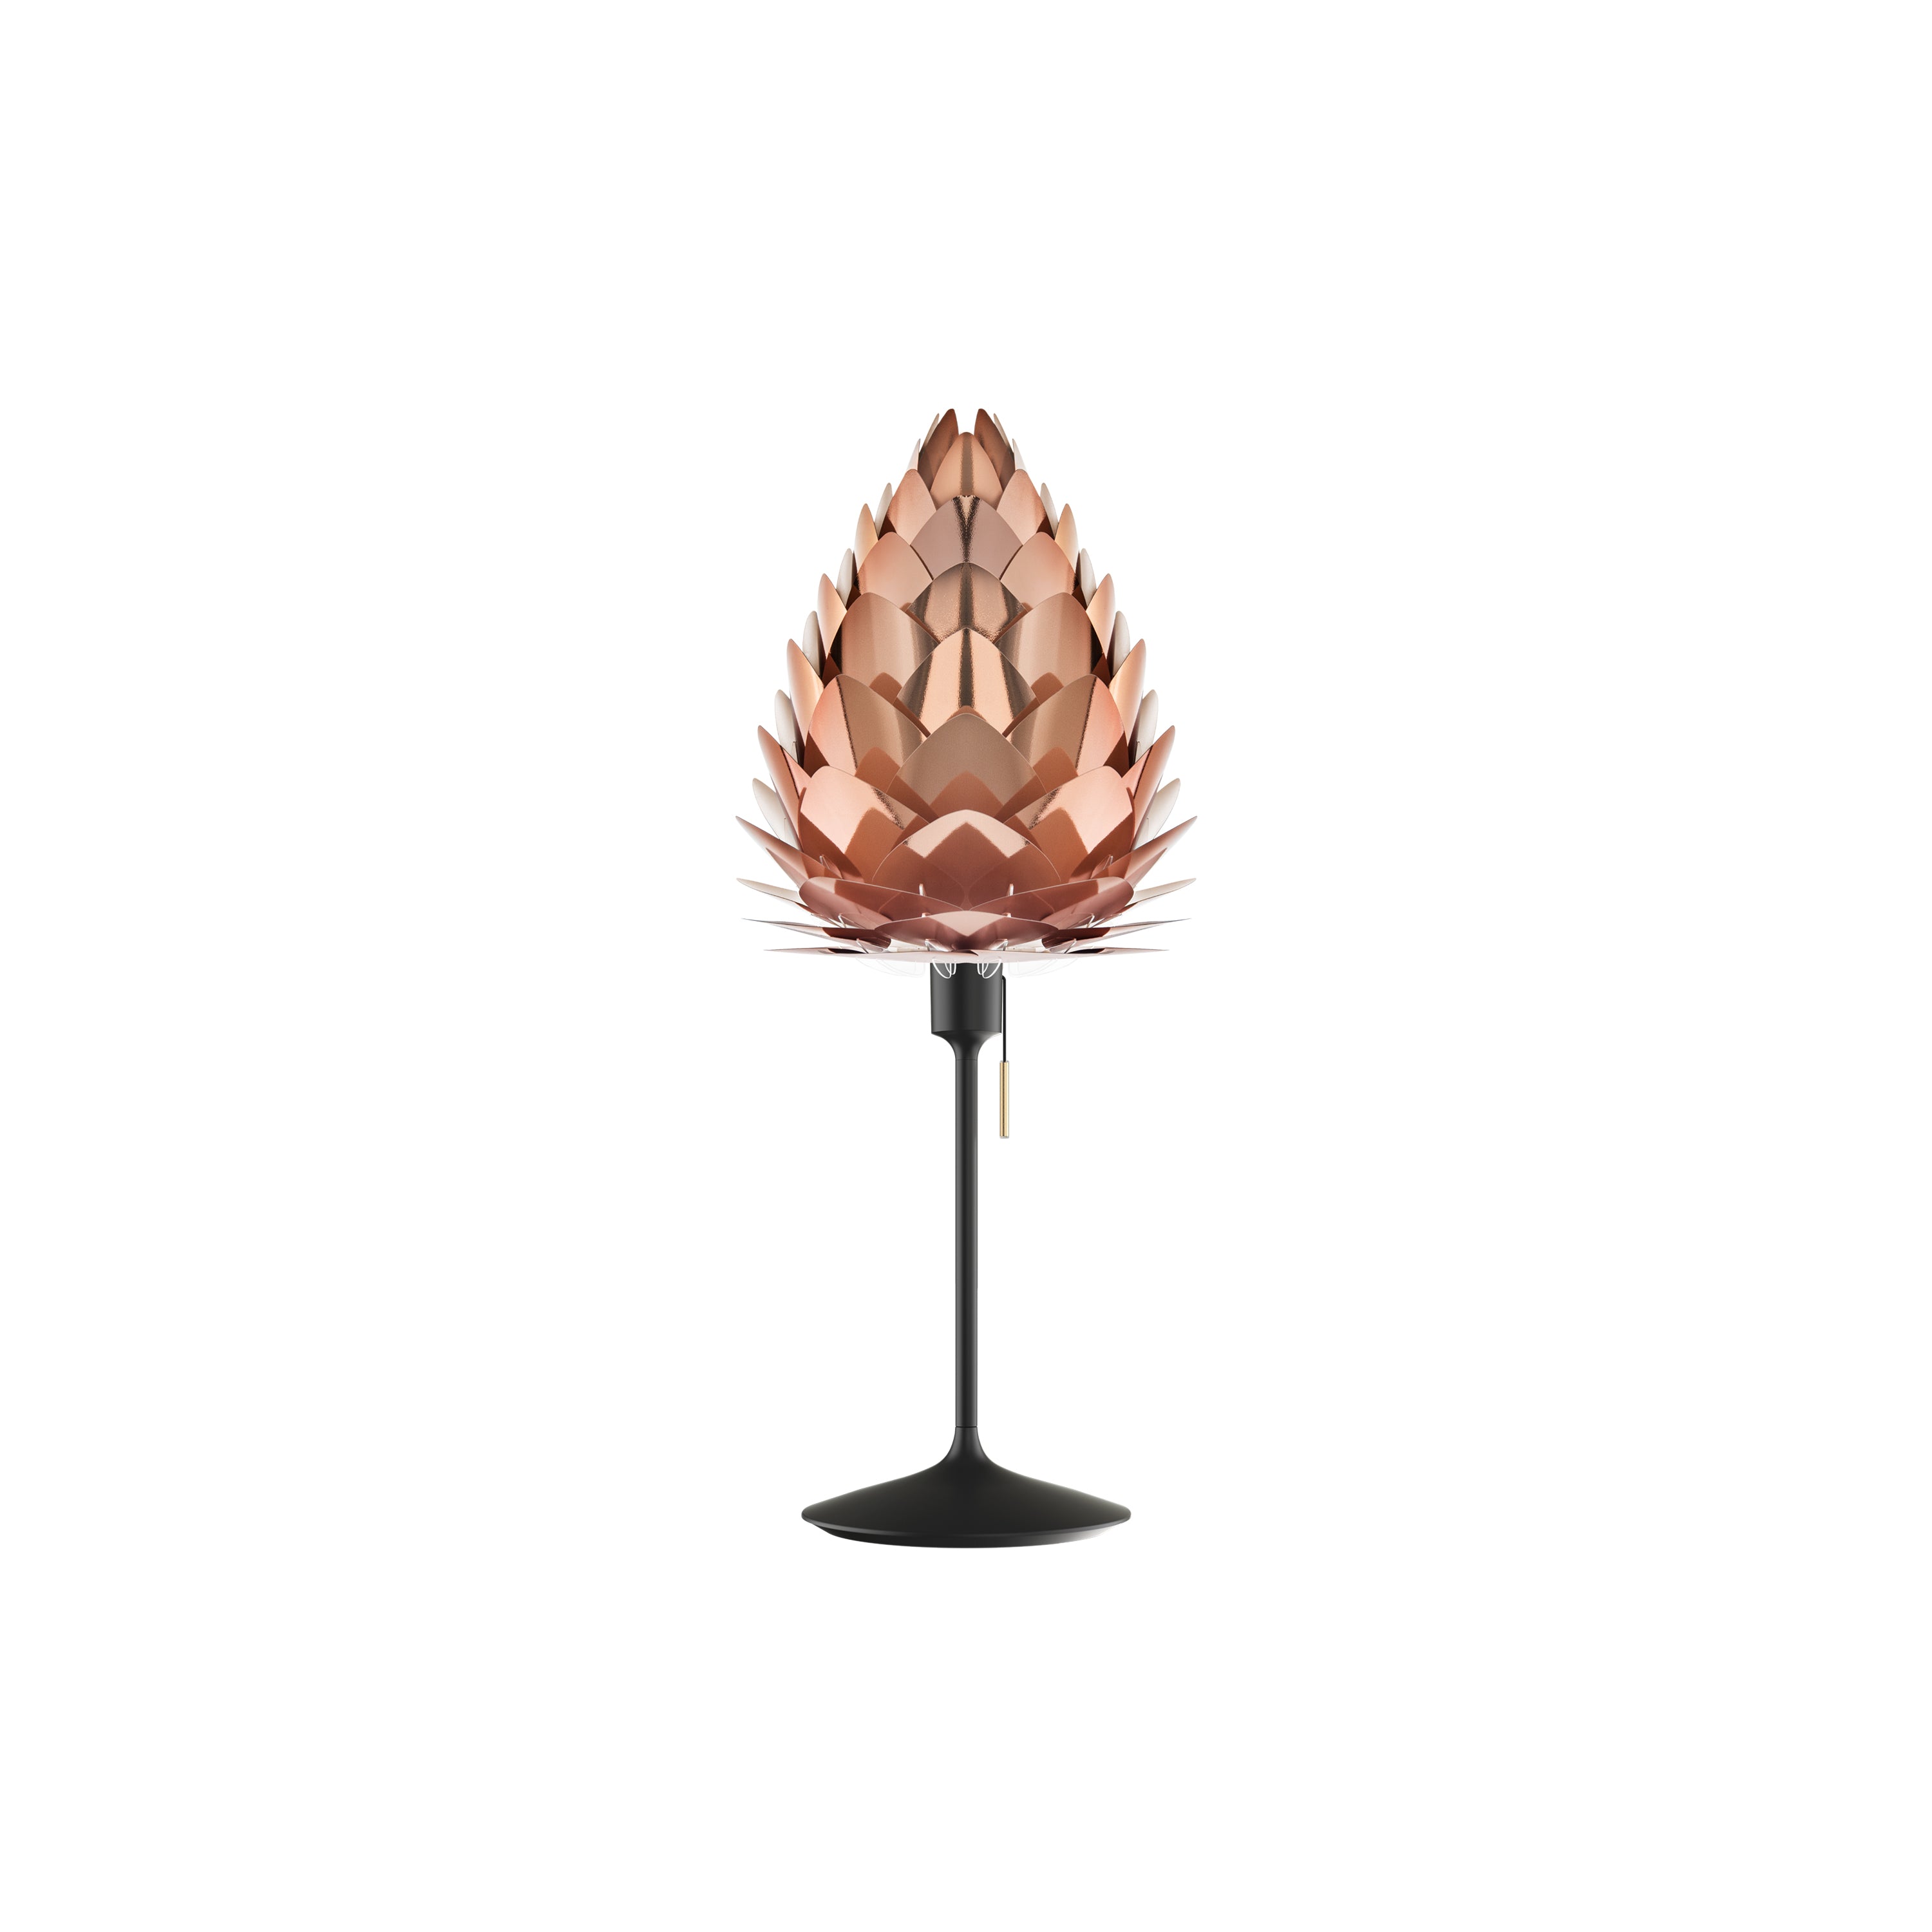 Conia Champagne Table Lamp: Mini - 11.8